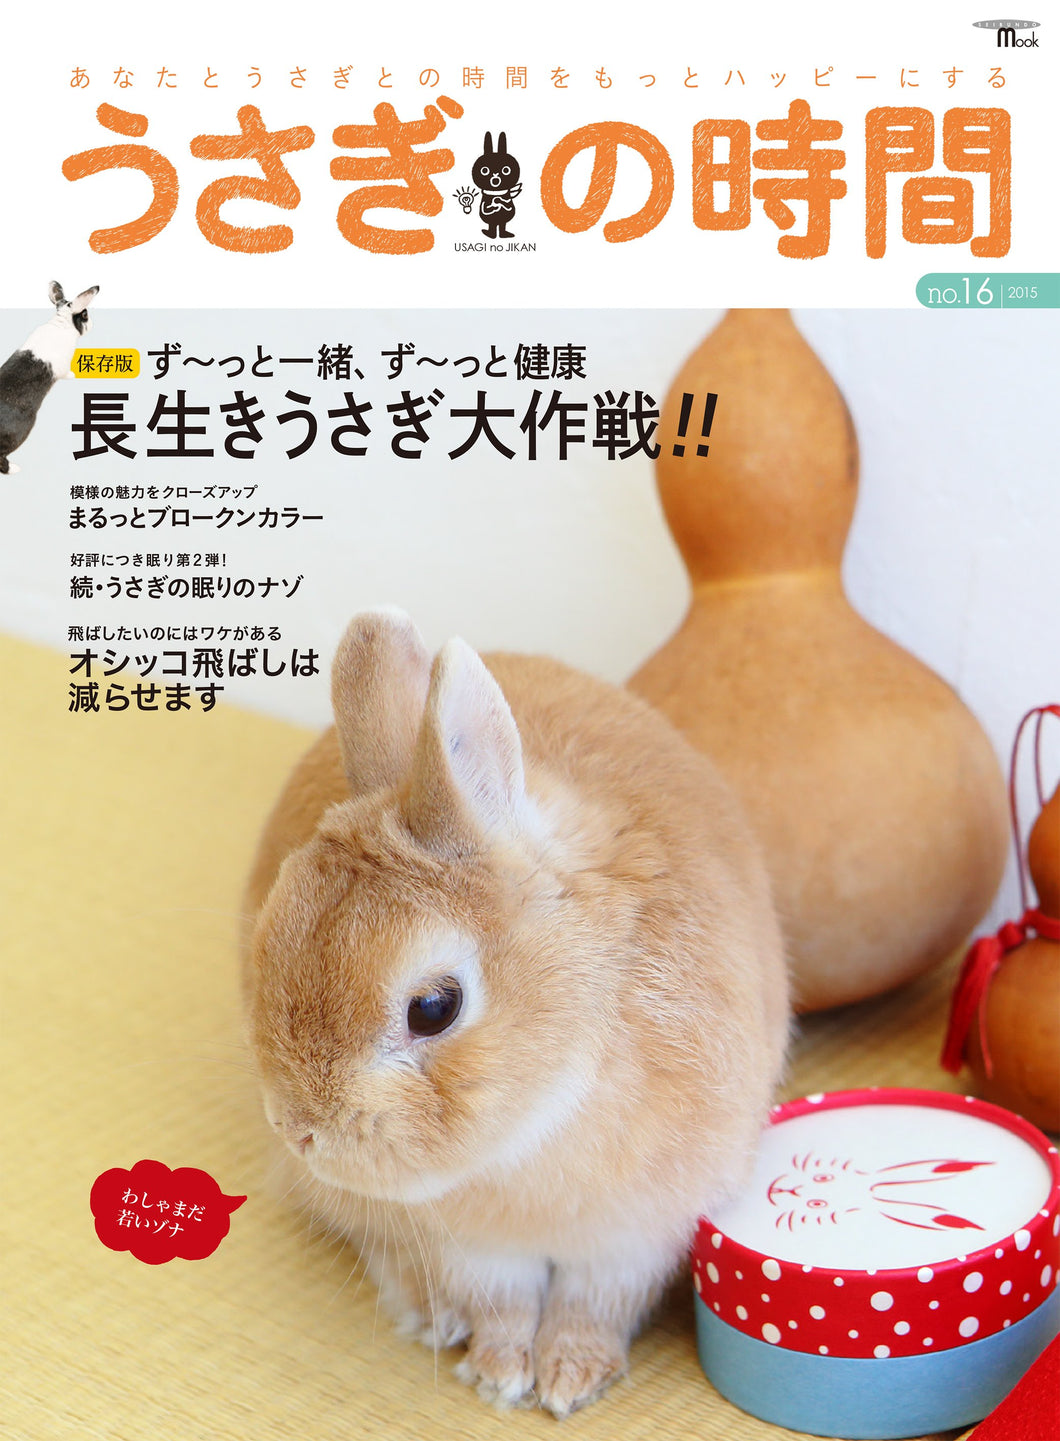 Usagi no Jikan No.16 Long live rabbit strategy!!